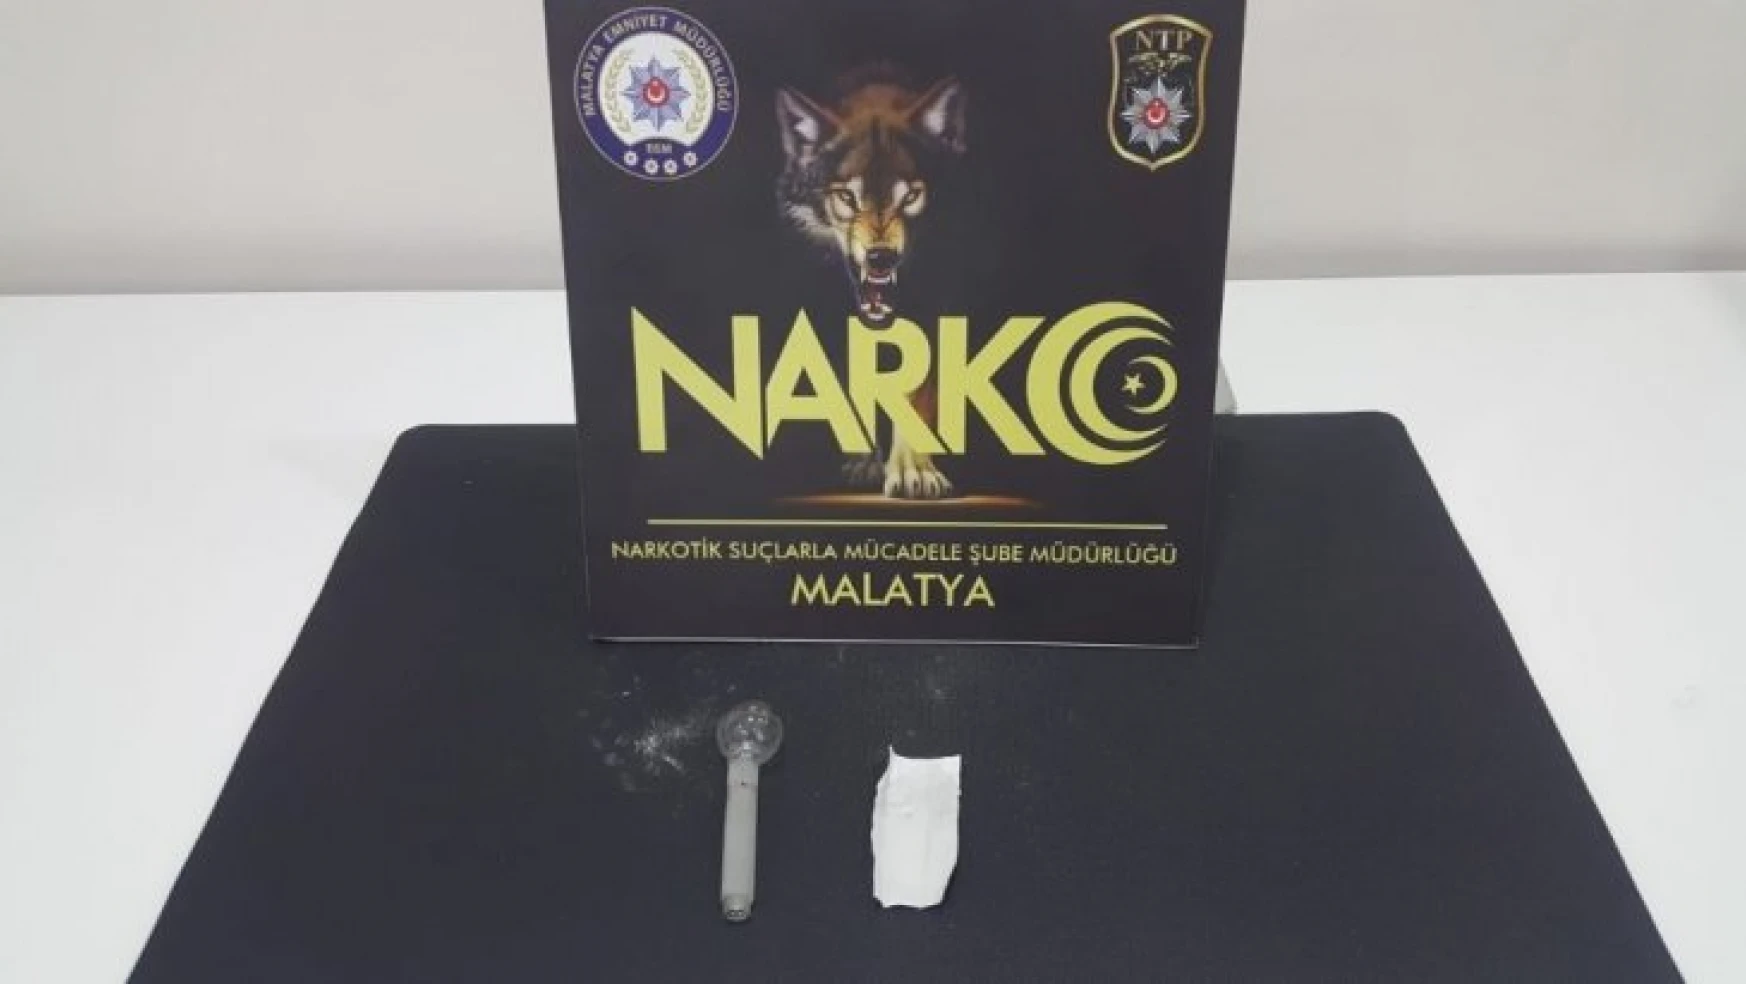 Malatya'da bir haftada 12 ayrı uyuşturucu operasyonu:19 gözaltı